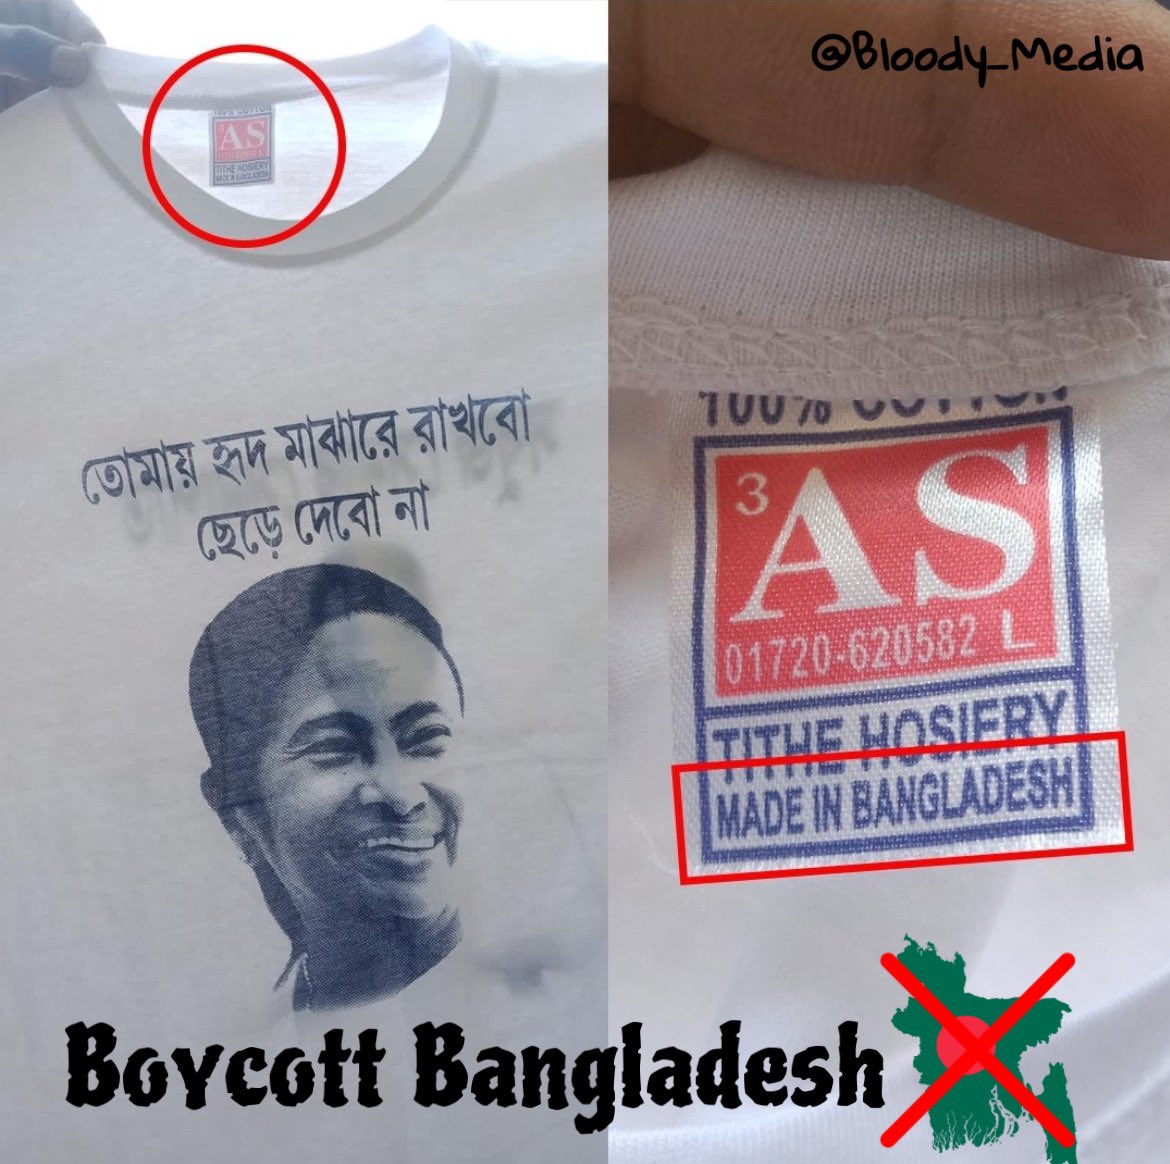 Boycott Bangladesh 🇧🇩! 
Say No to Bangladeshi Products 🙅🏻‍♂️ 

#BoycottBangladesh #BoycottBangladeshiProducts